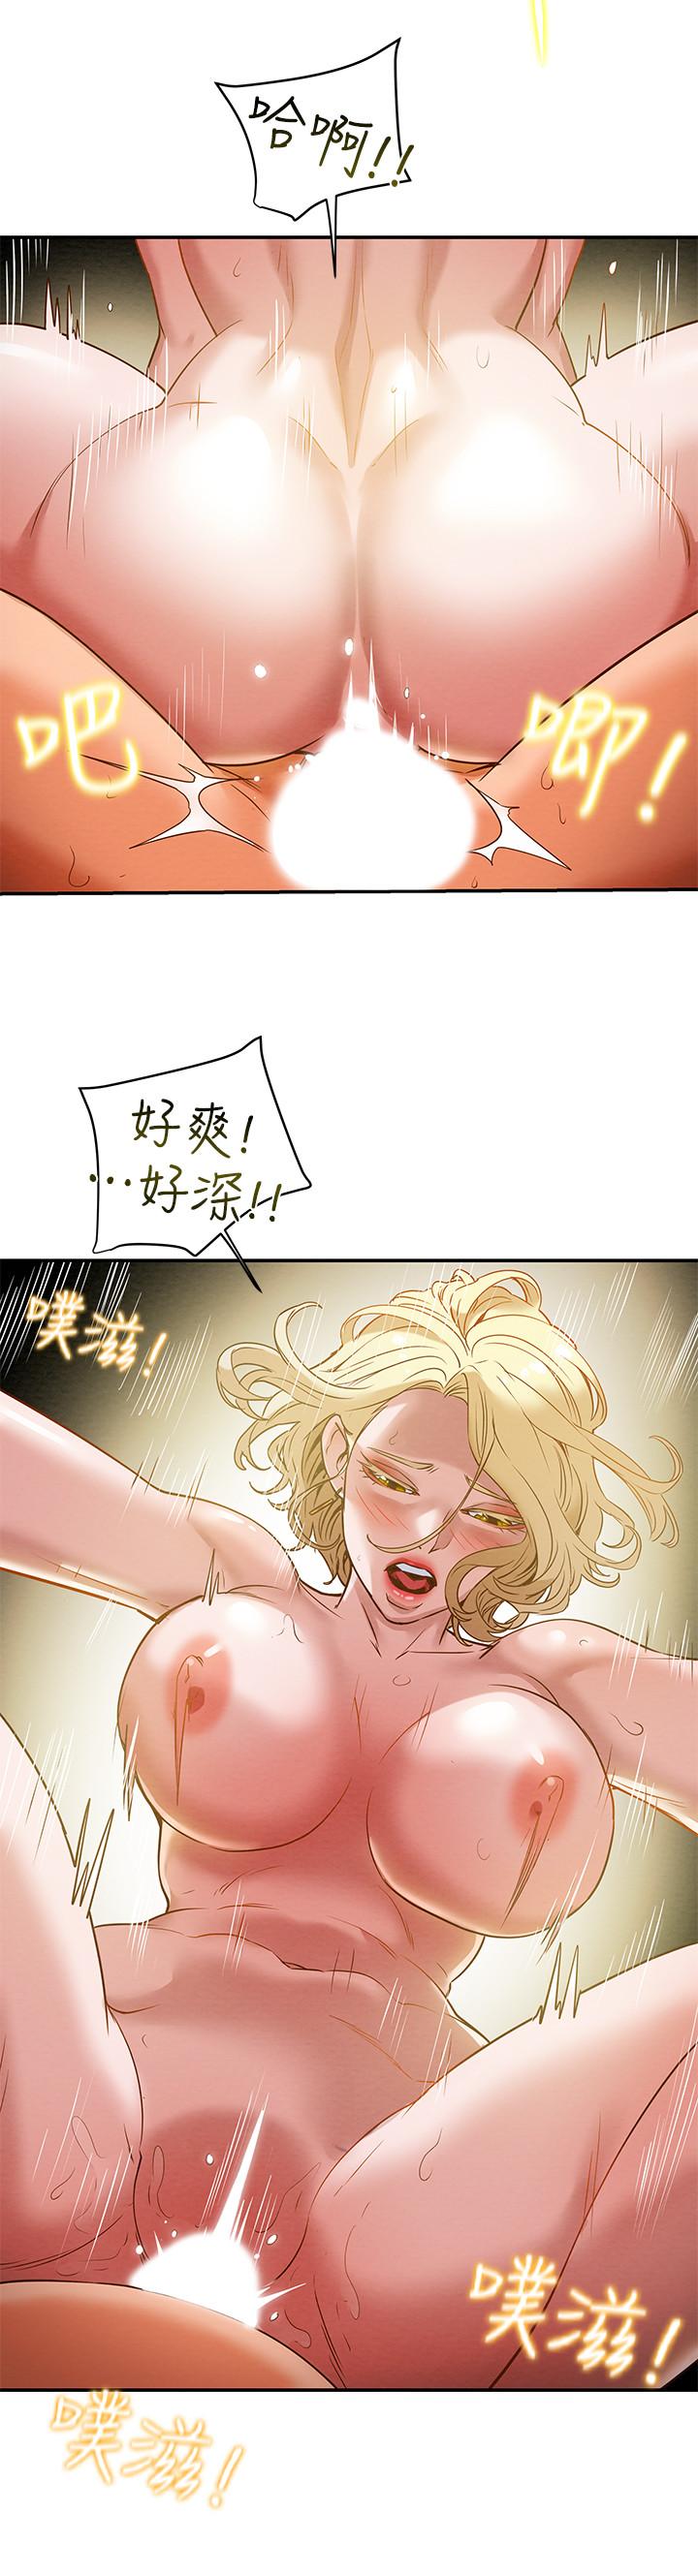 韩国污漫画 純情女攻略計劃 第9话-使男人疯狂的高超技巧 32